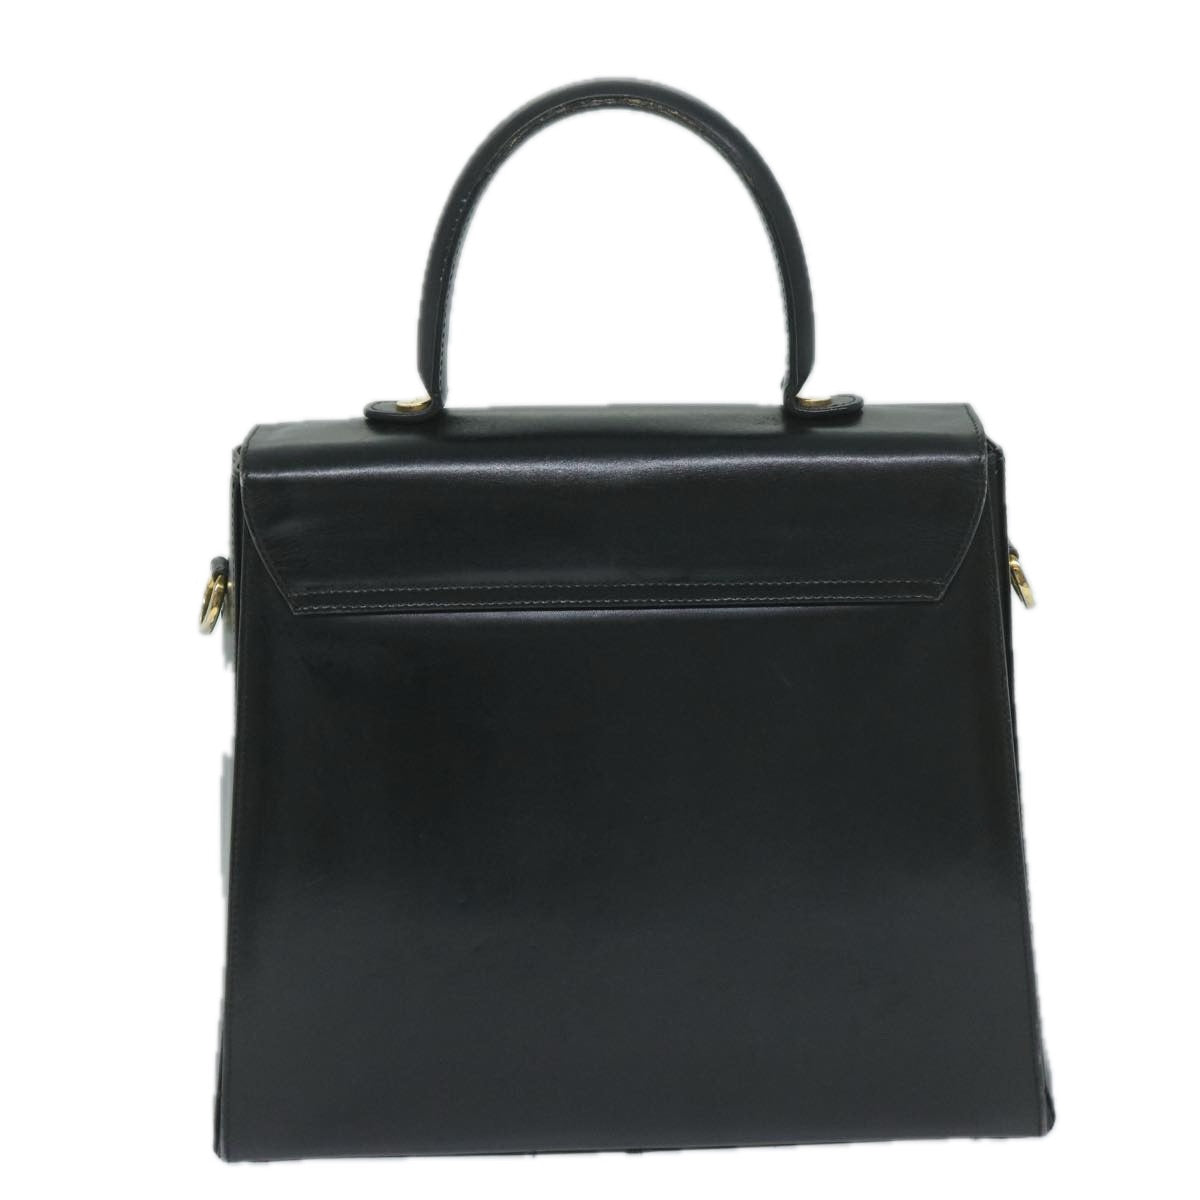 Salvatore Ferragamo Gancini Hand Bag Leather Black Auth 60124 - 0